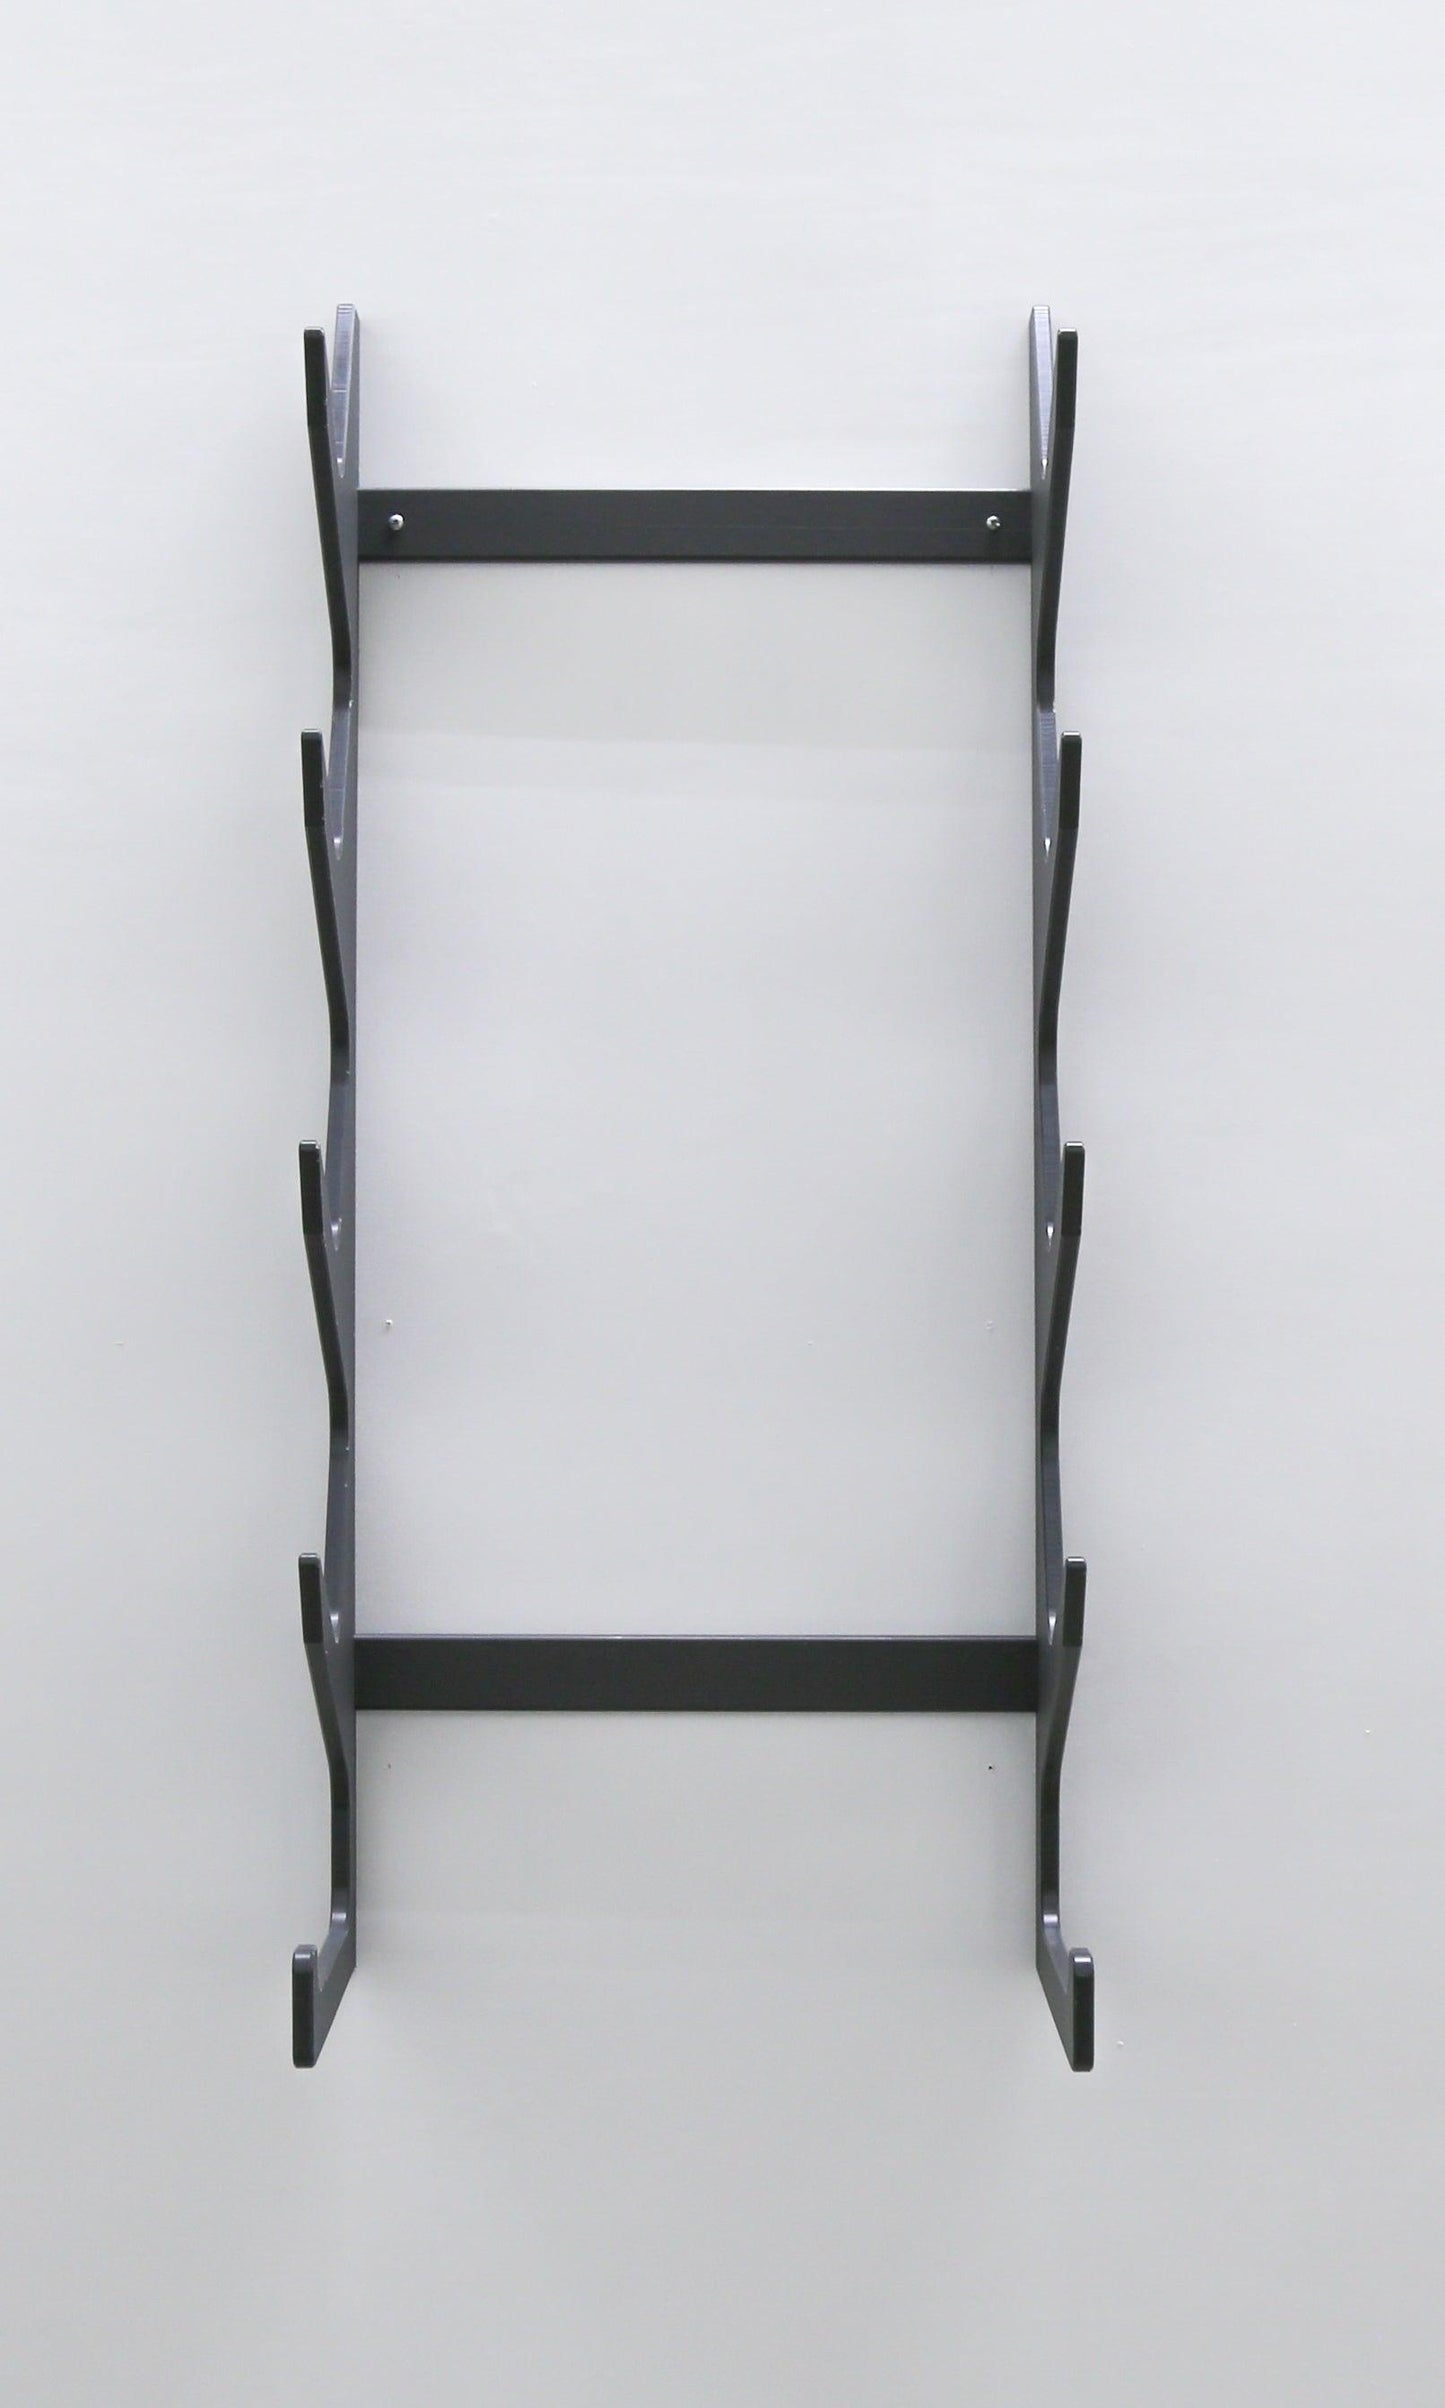 TRAPSKI Versa Slim Profile 4 Slot Chair Rack Plus Base - TRAPSKI, LLC